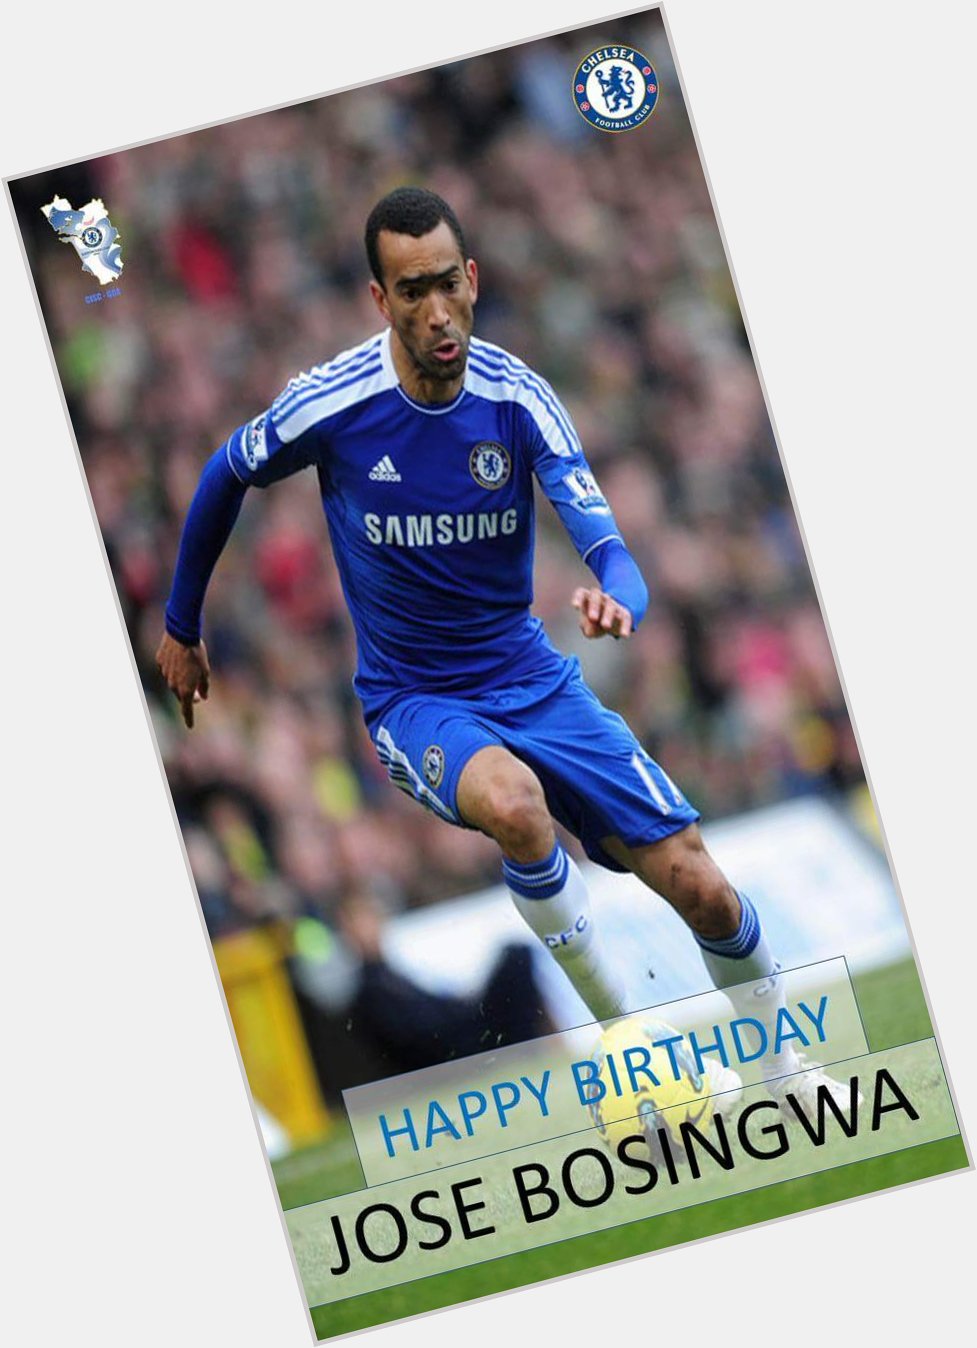 Happy birthday to Jose Bosingwa who turns 35 today.    